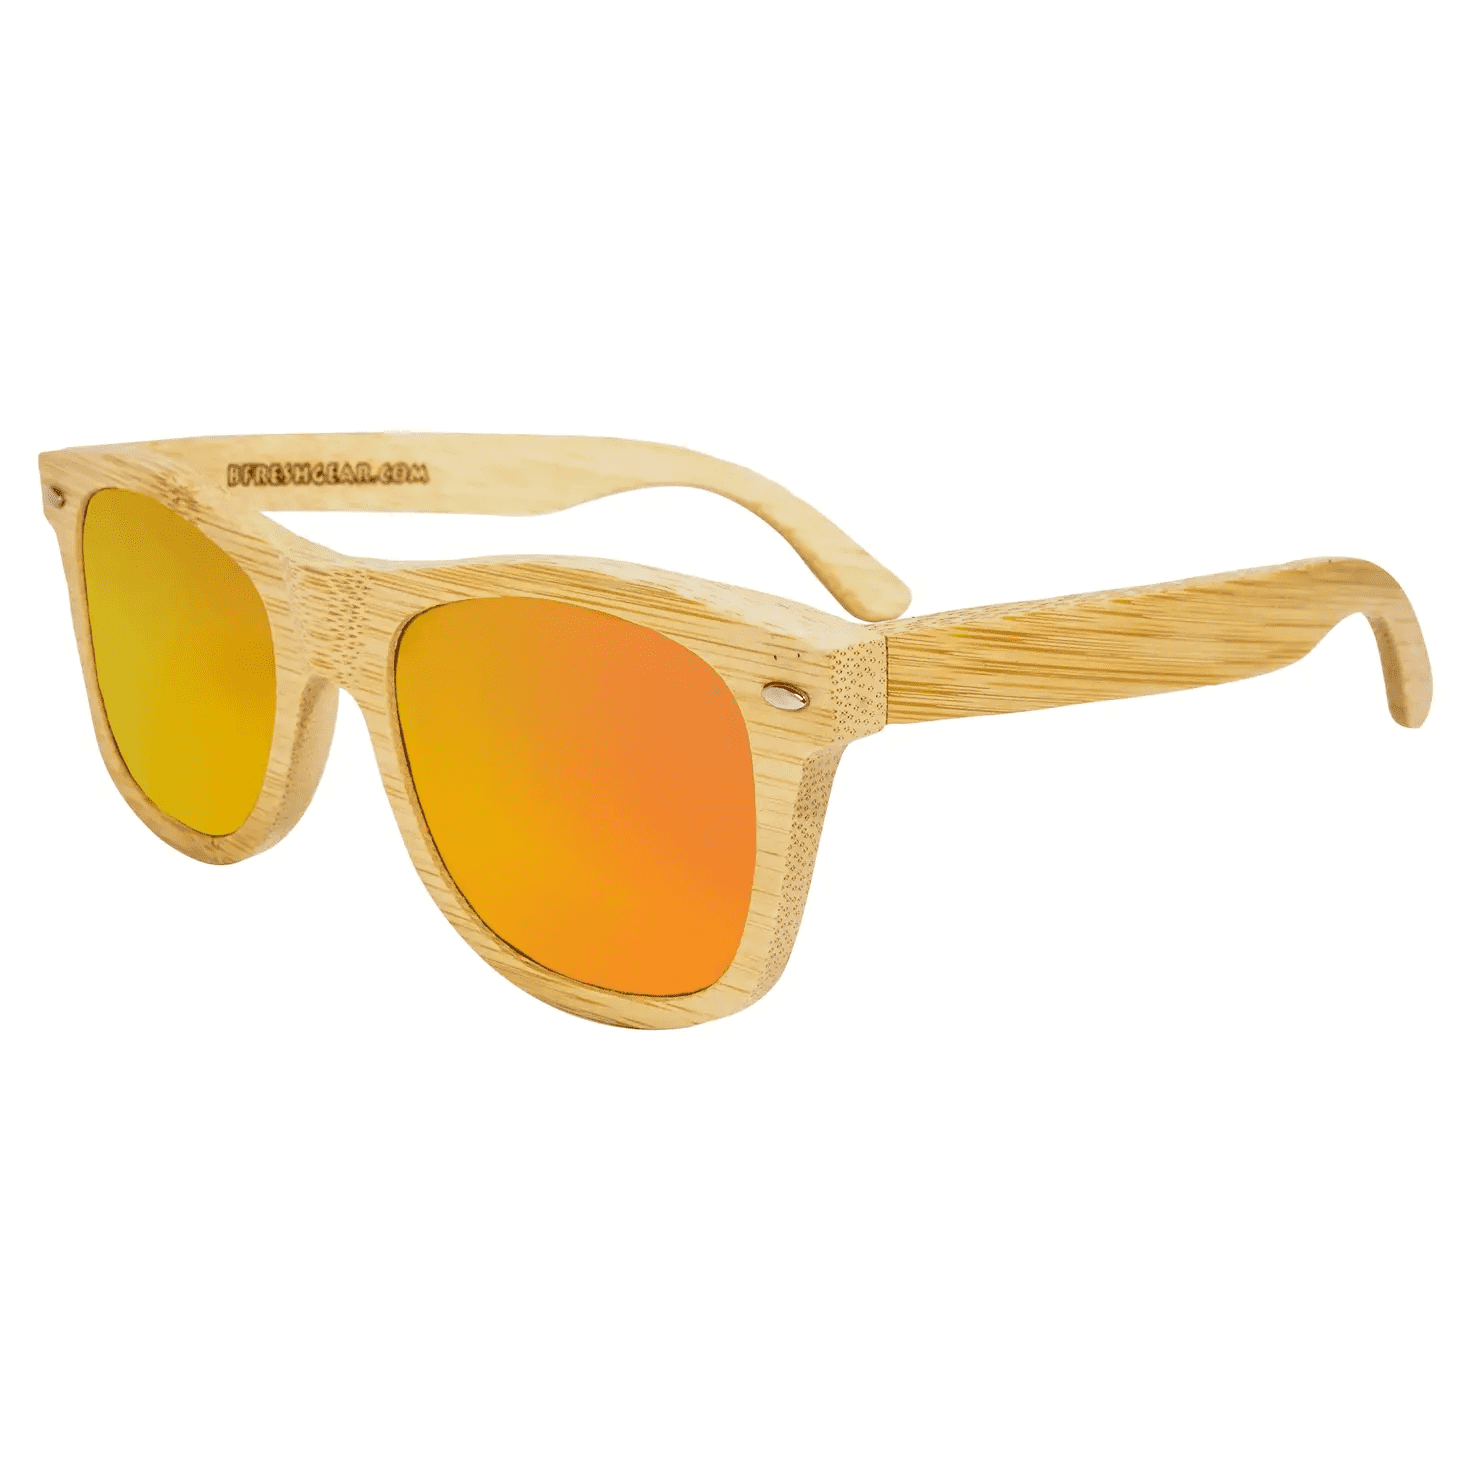 Highflyer Wooden Sunglasses